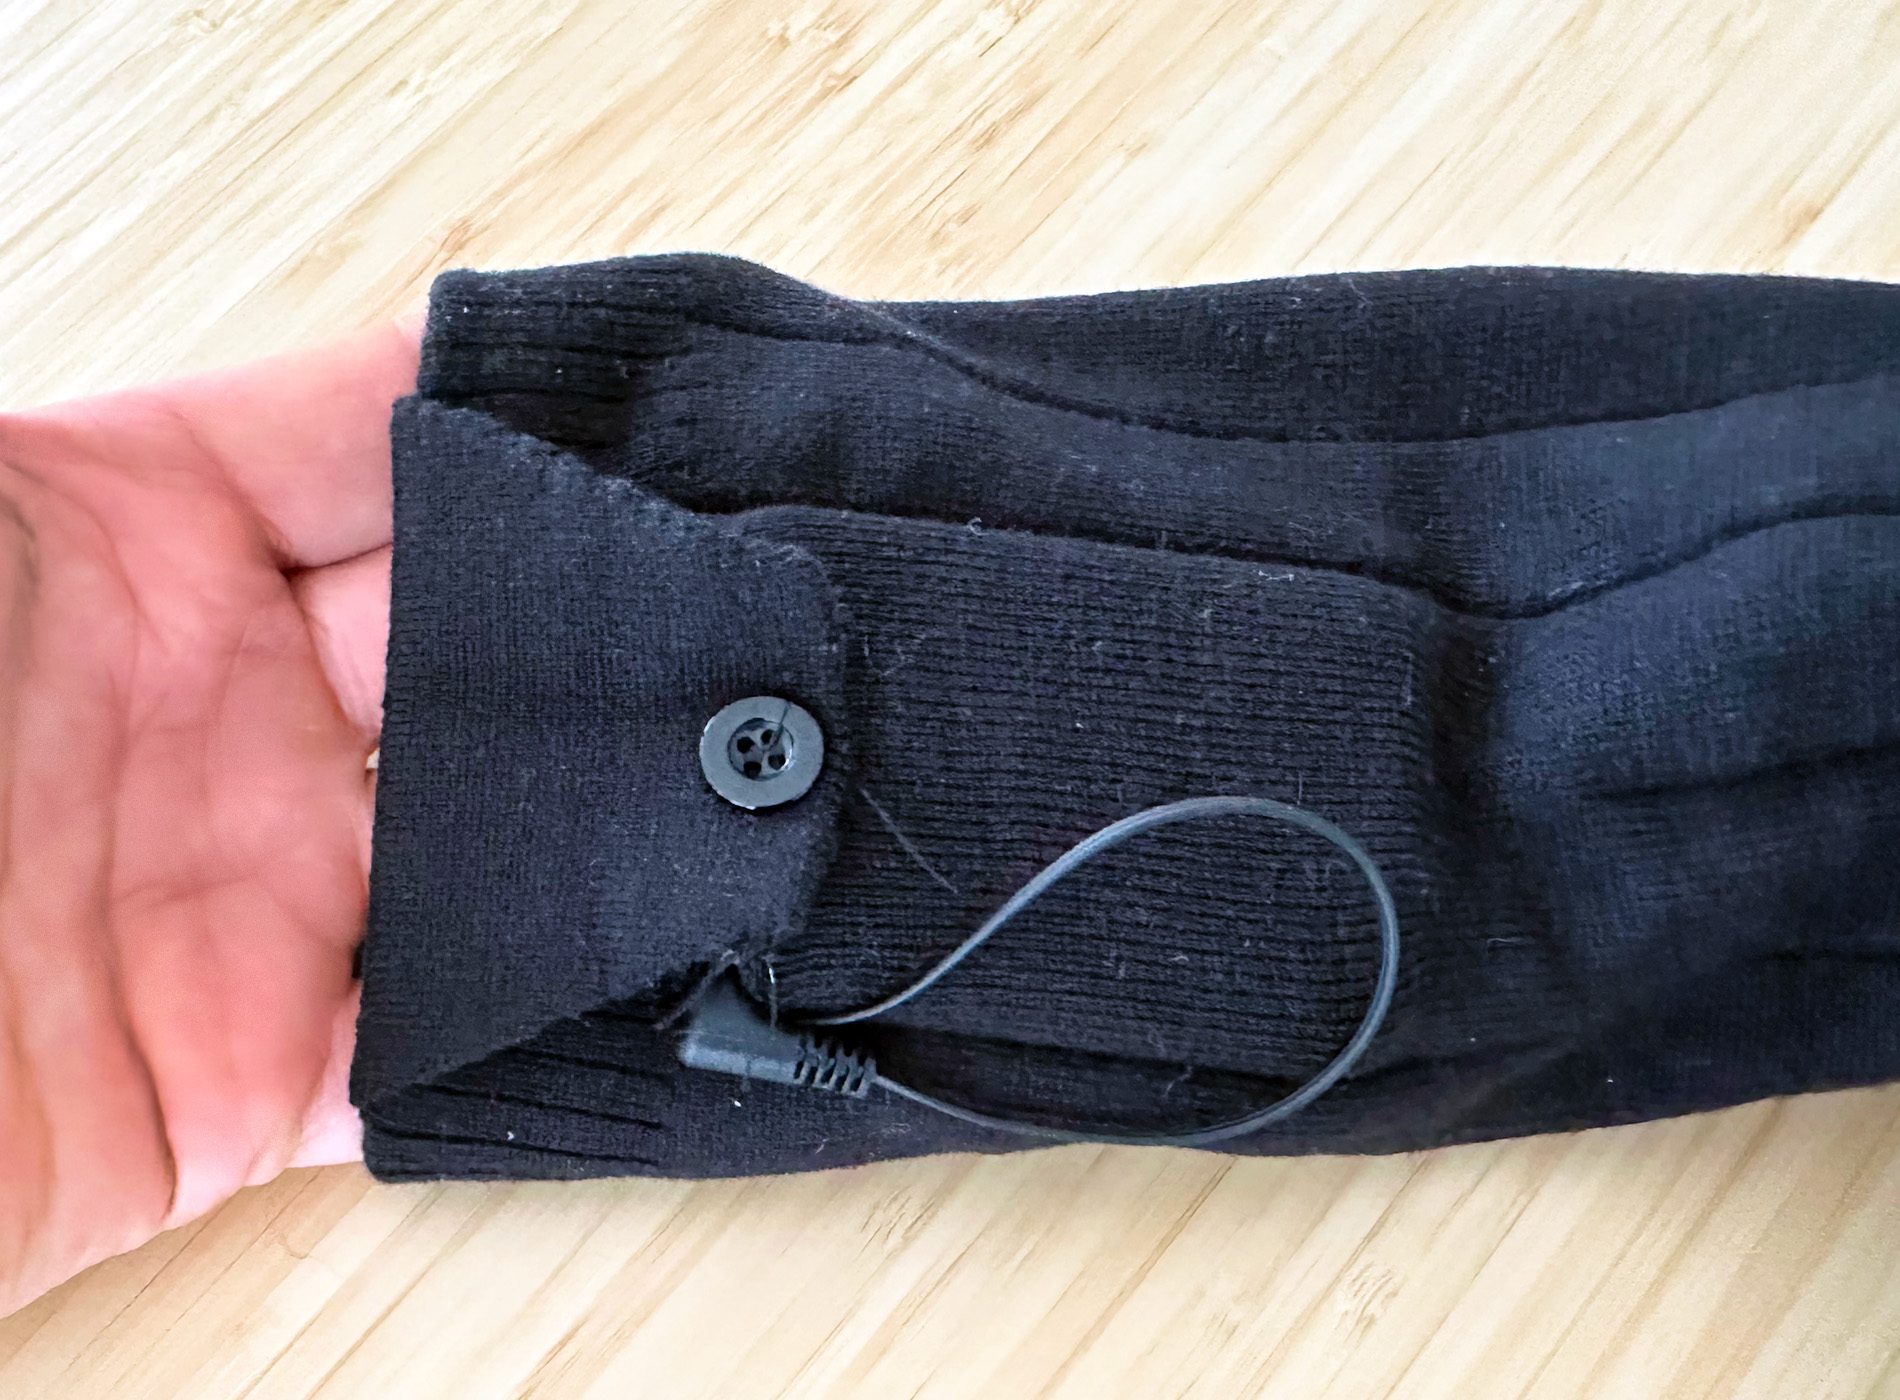 In dieser Tasche an den Socken wird der Akku untergebracht. Dieser stört kaum beim Tragen der Socken.